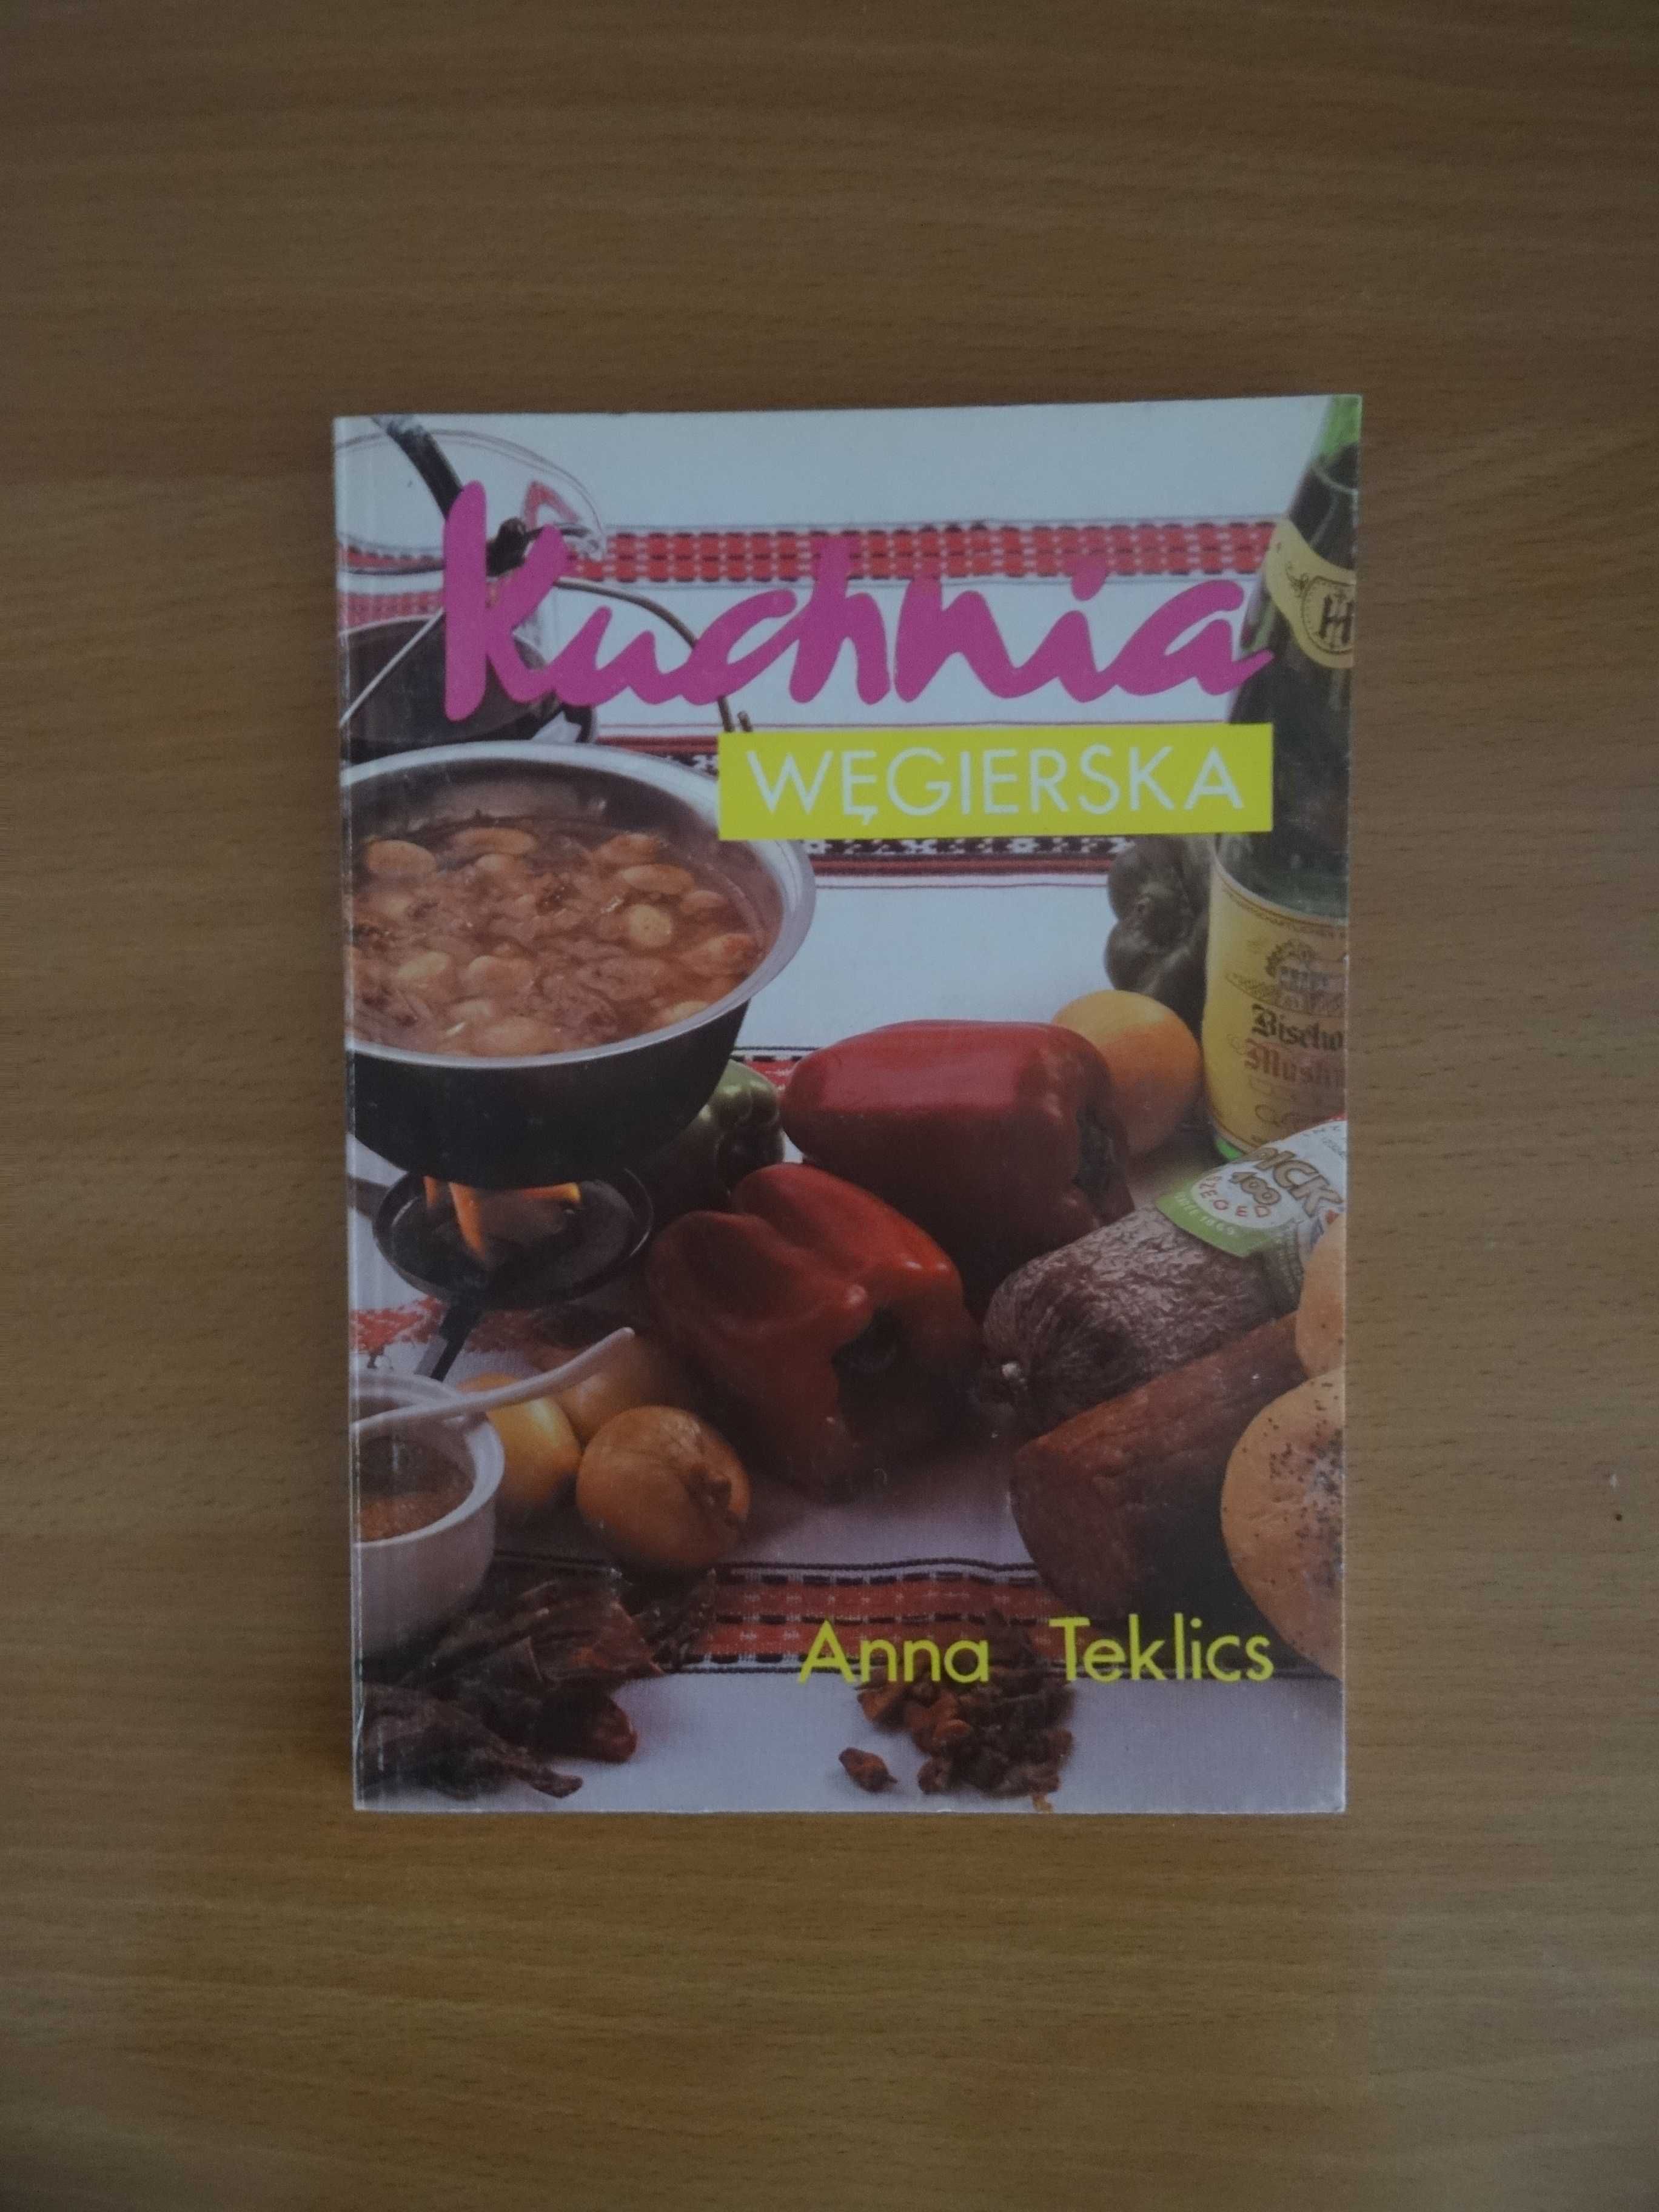 Kuchnia kawalerska, węgierska, czosnkowa - książka kucharska